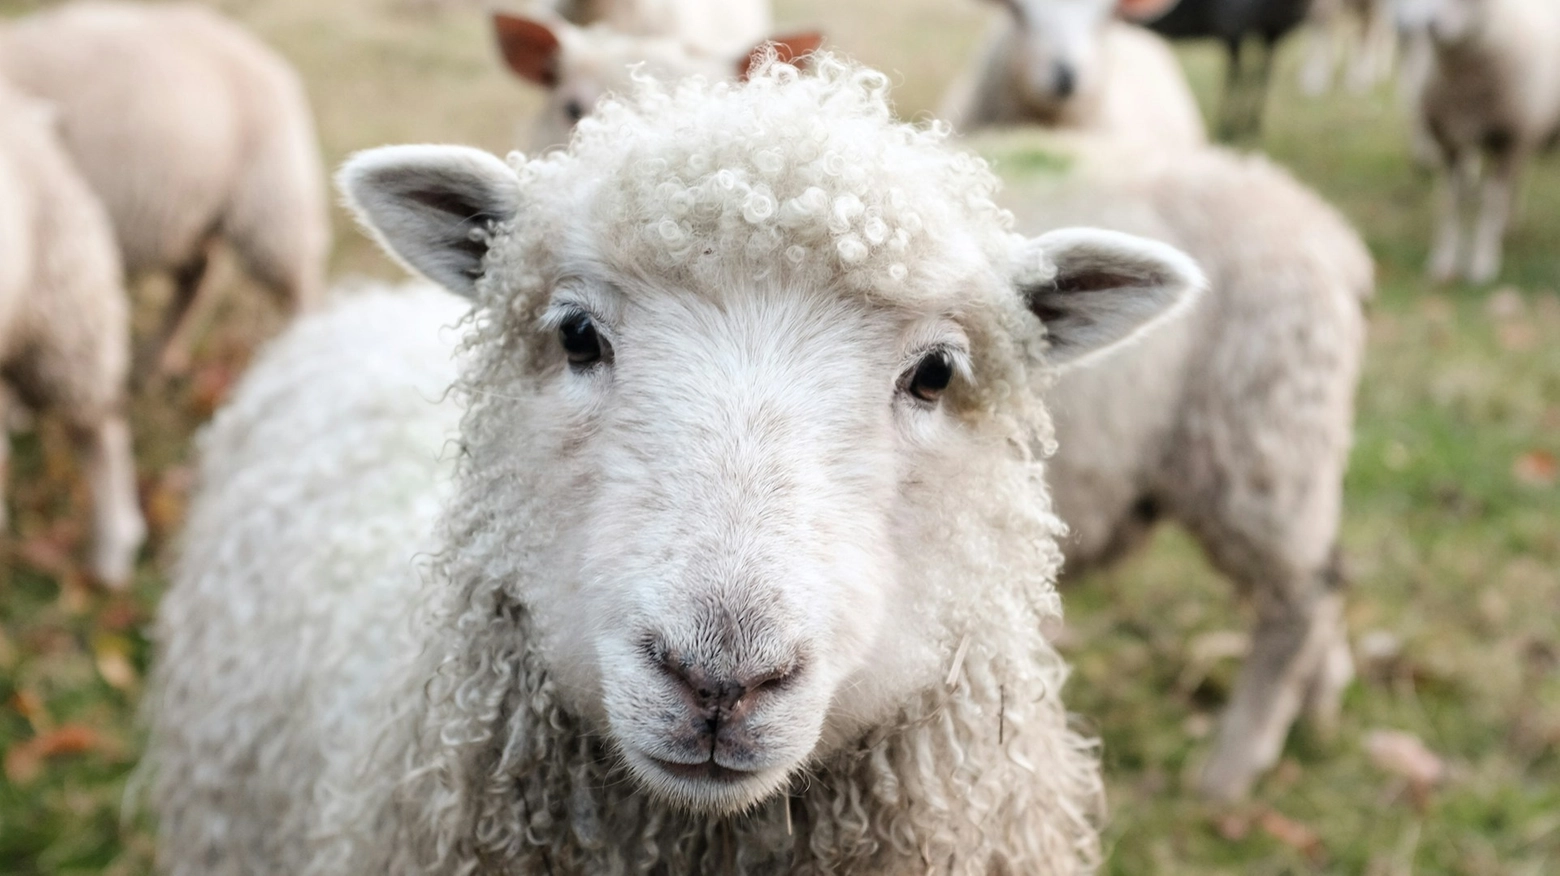 Quattro pecore iscritte a scuola in Francia